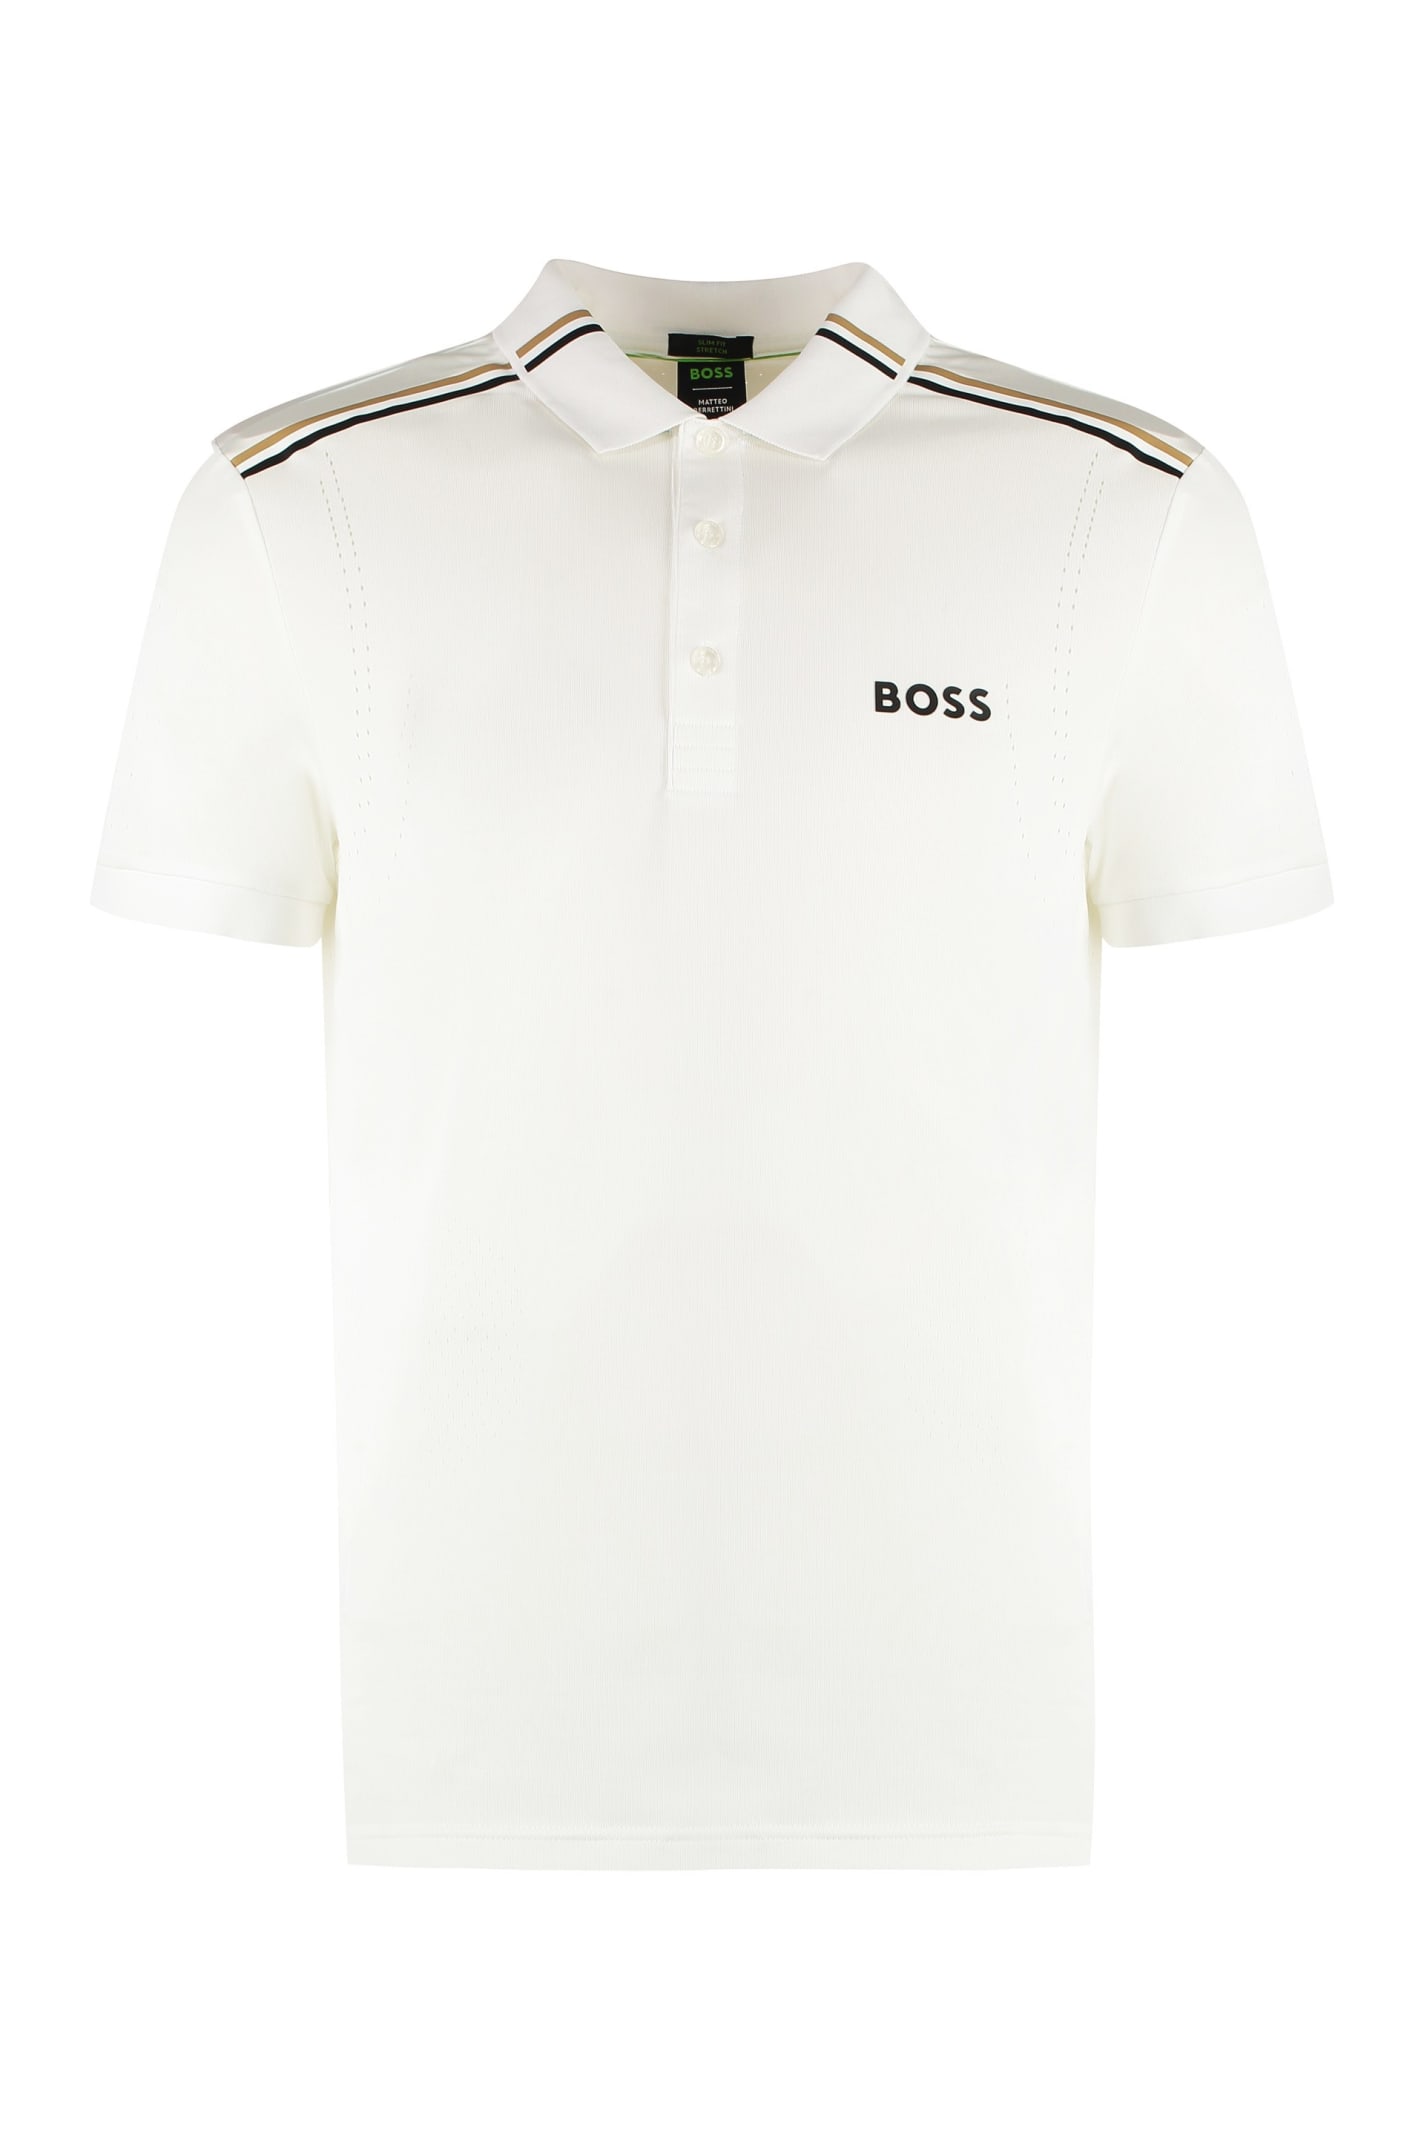 Boss X Matteo Berrettini - Techno Jersey Polo Shirt